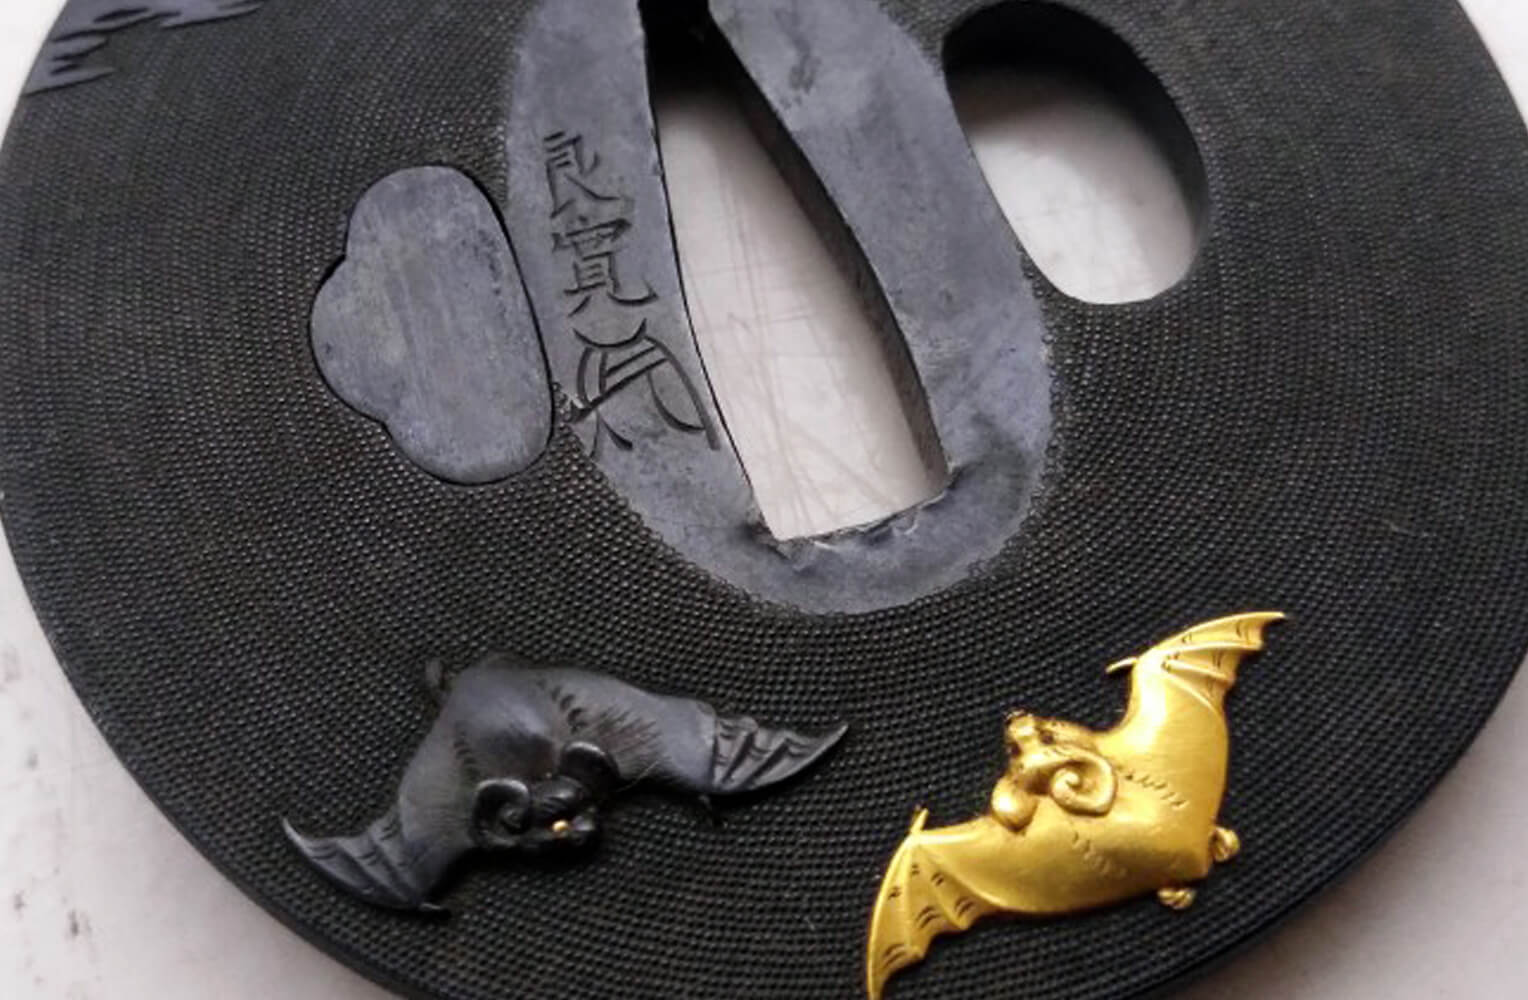 岩本良寛 赤銅蝙蝠図象嵌鍔 商品画像